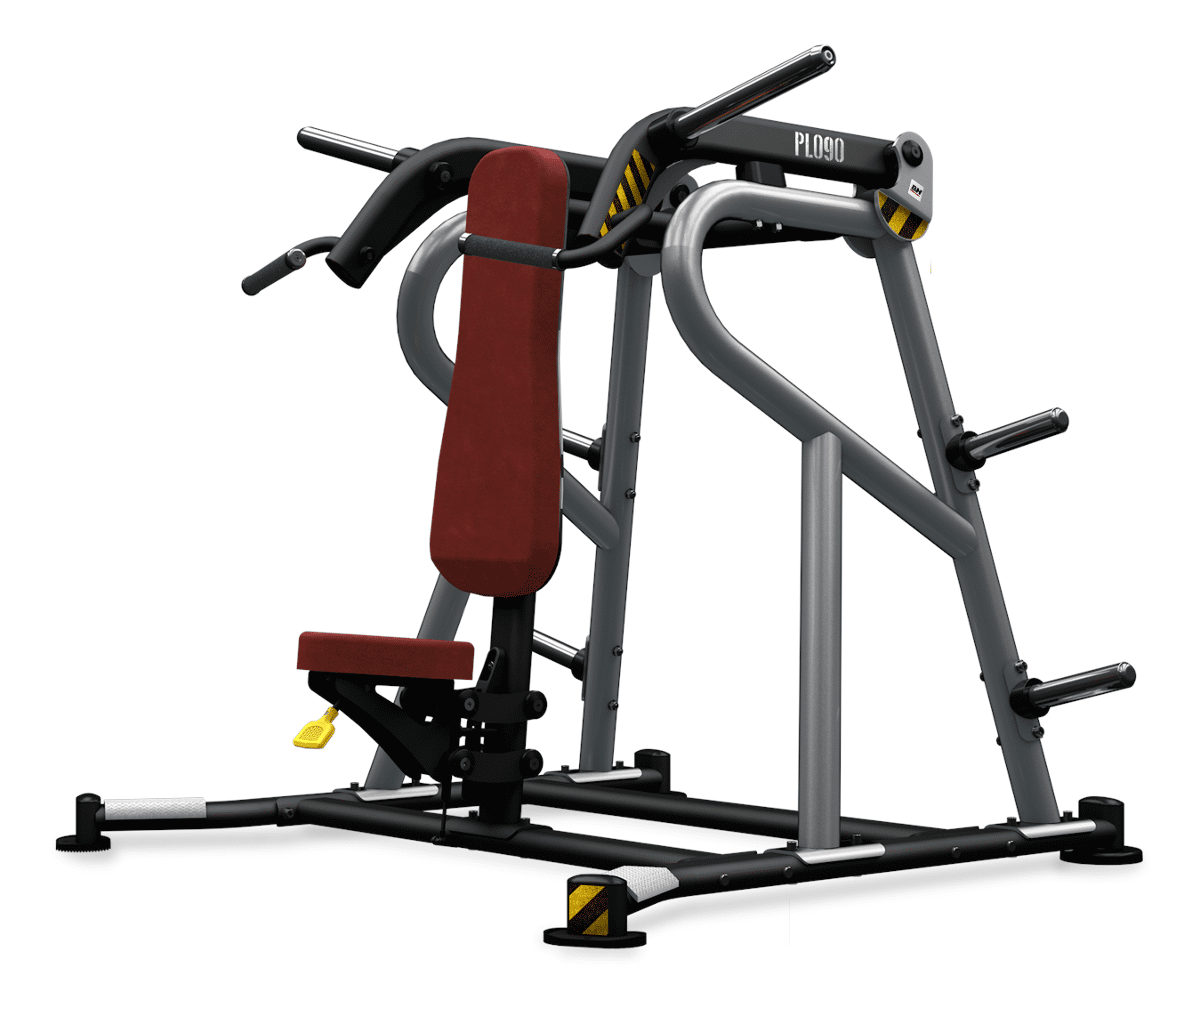 Maszyna półwolna do ćwiczeń mięśni ramion Shoulder Press Convergent PL090 BH Fitness